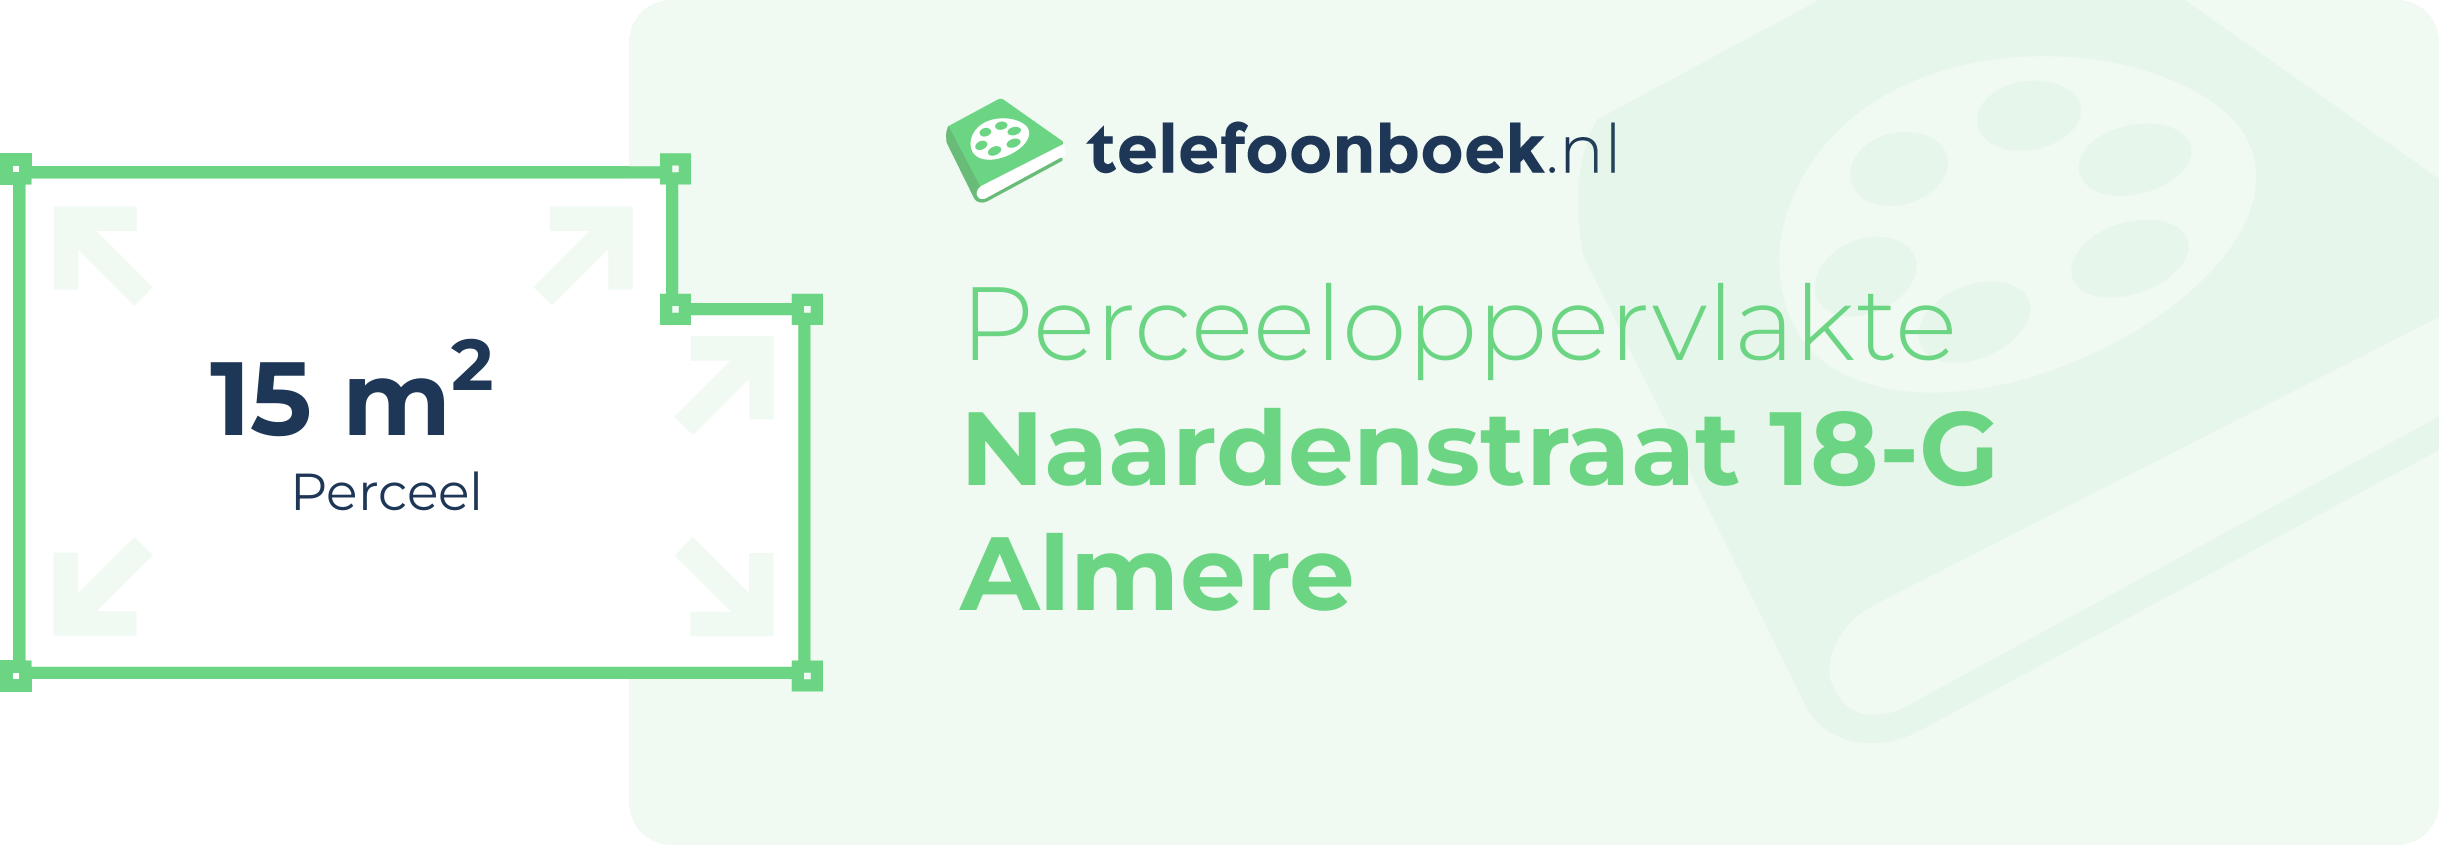 Perceeloppervlakte Naardenstraat 18-G Almere